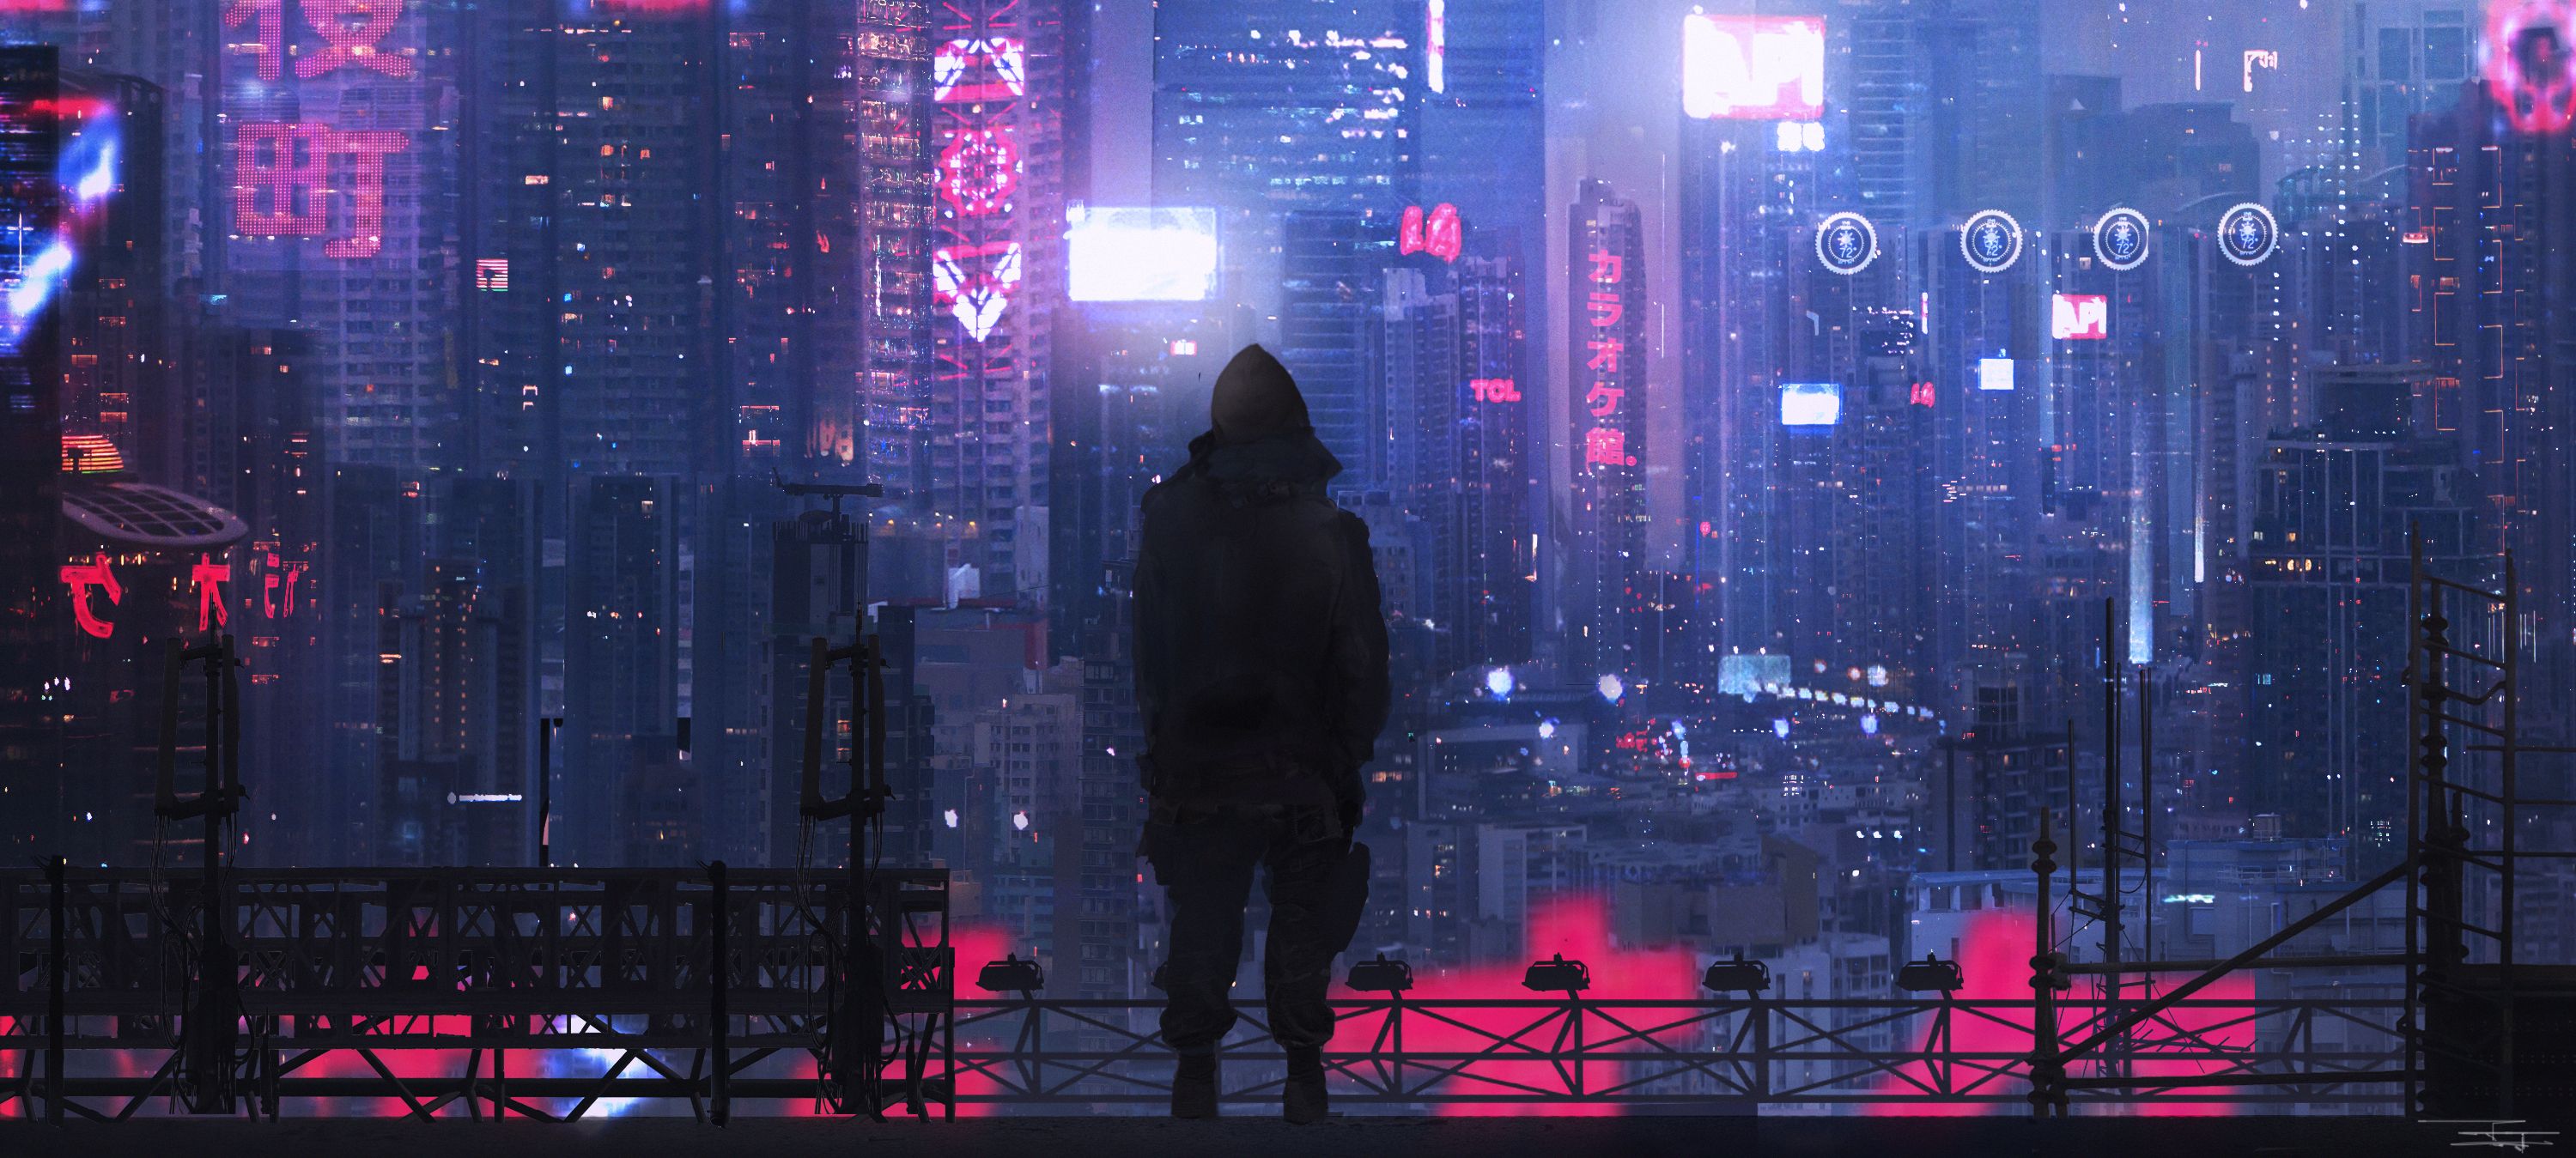 Cyberpunk 2077 Concept Art City - HD Wallpaper 